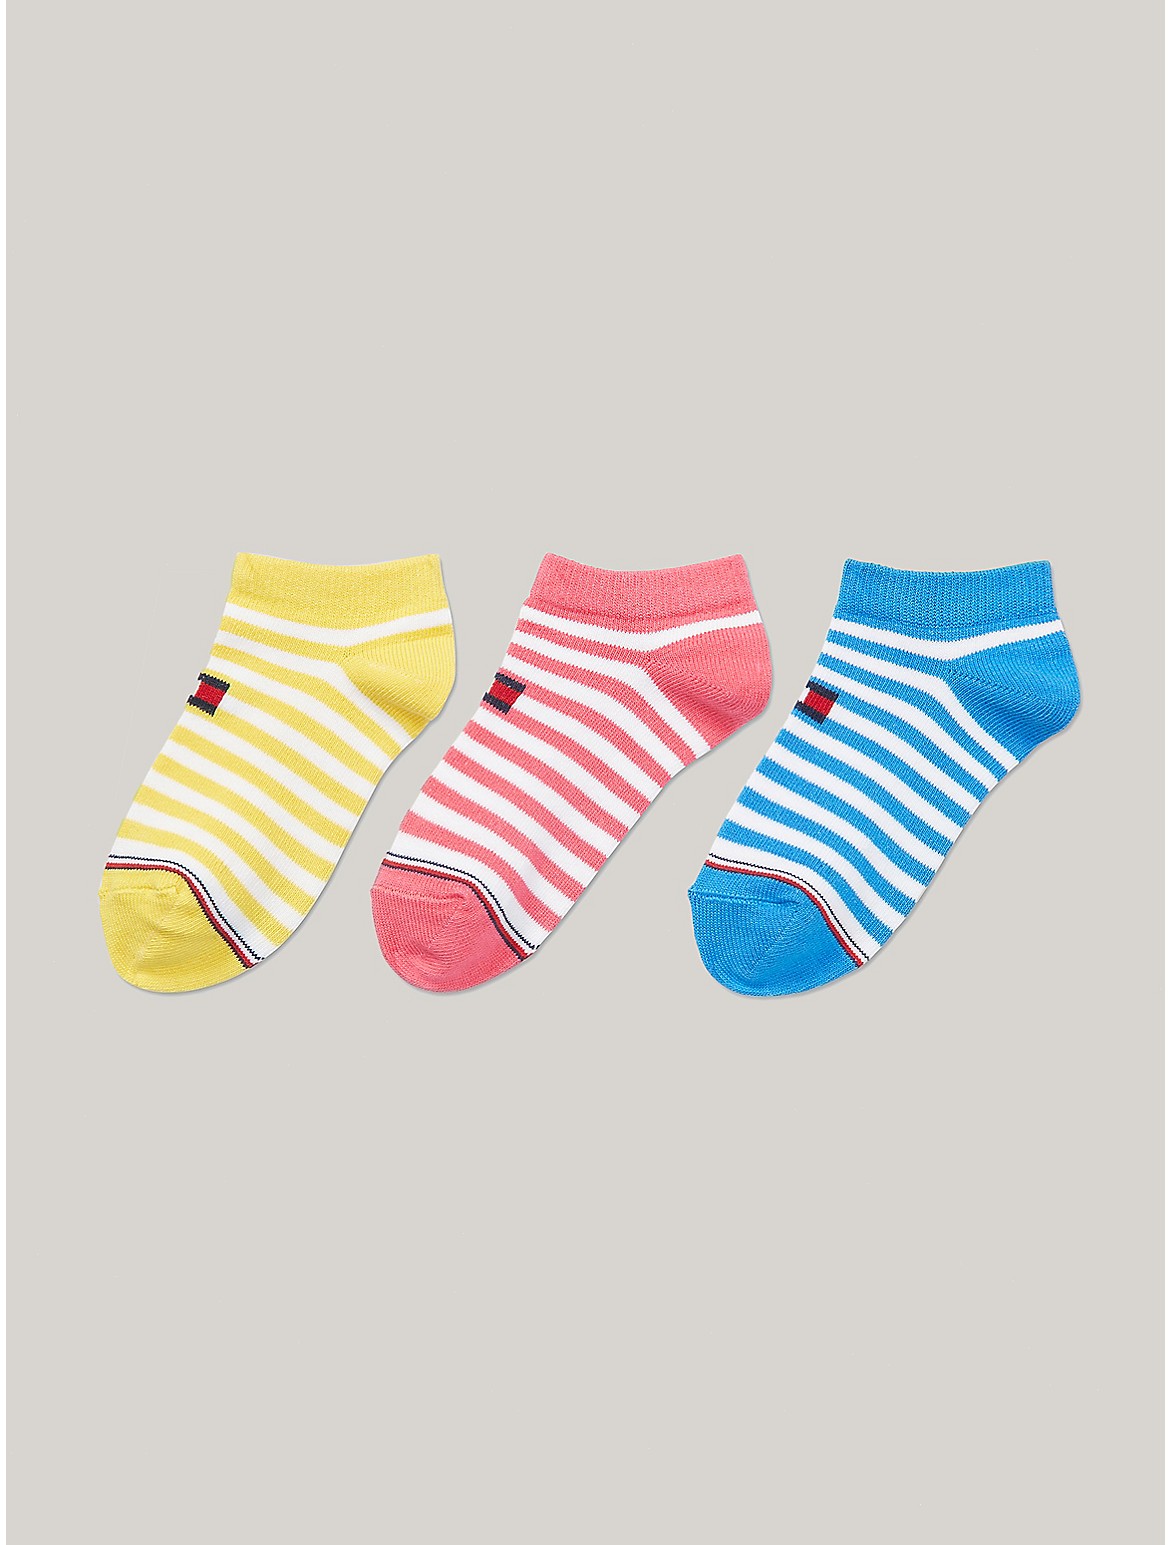 Tommy Hilfiger Girls' Kids' Ankle Sock 3-Pack